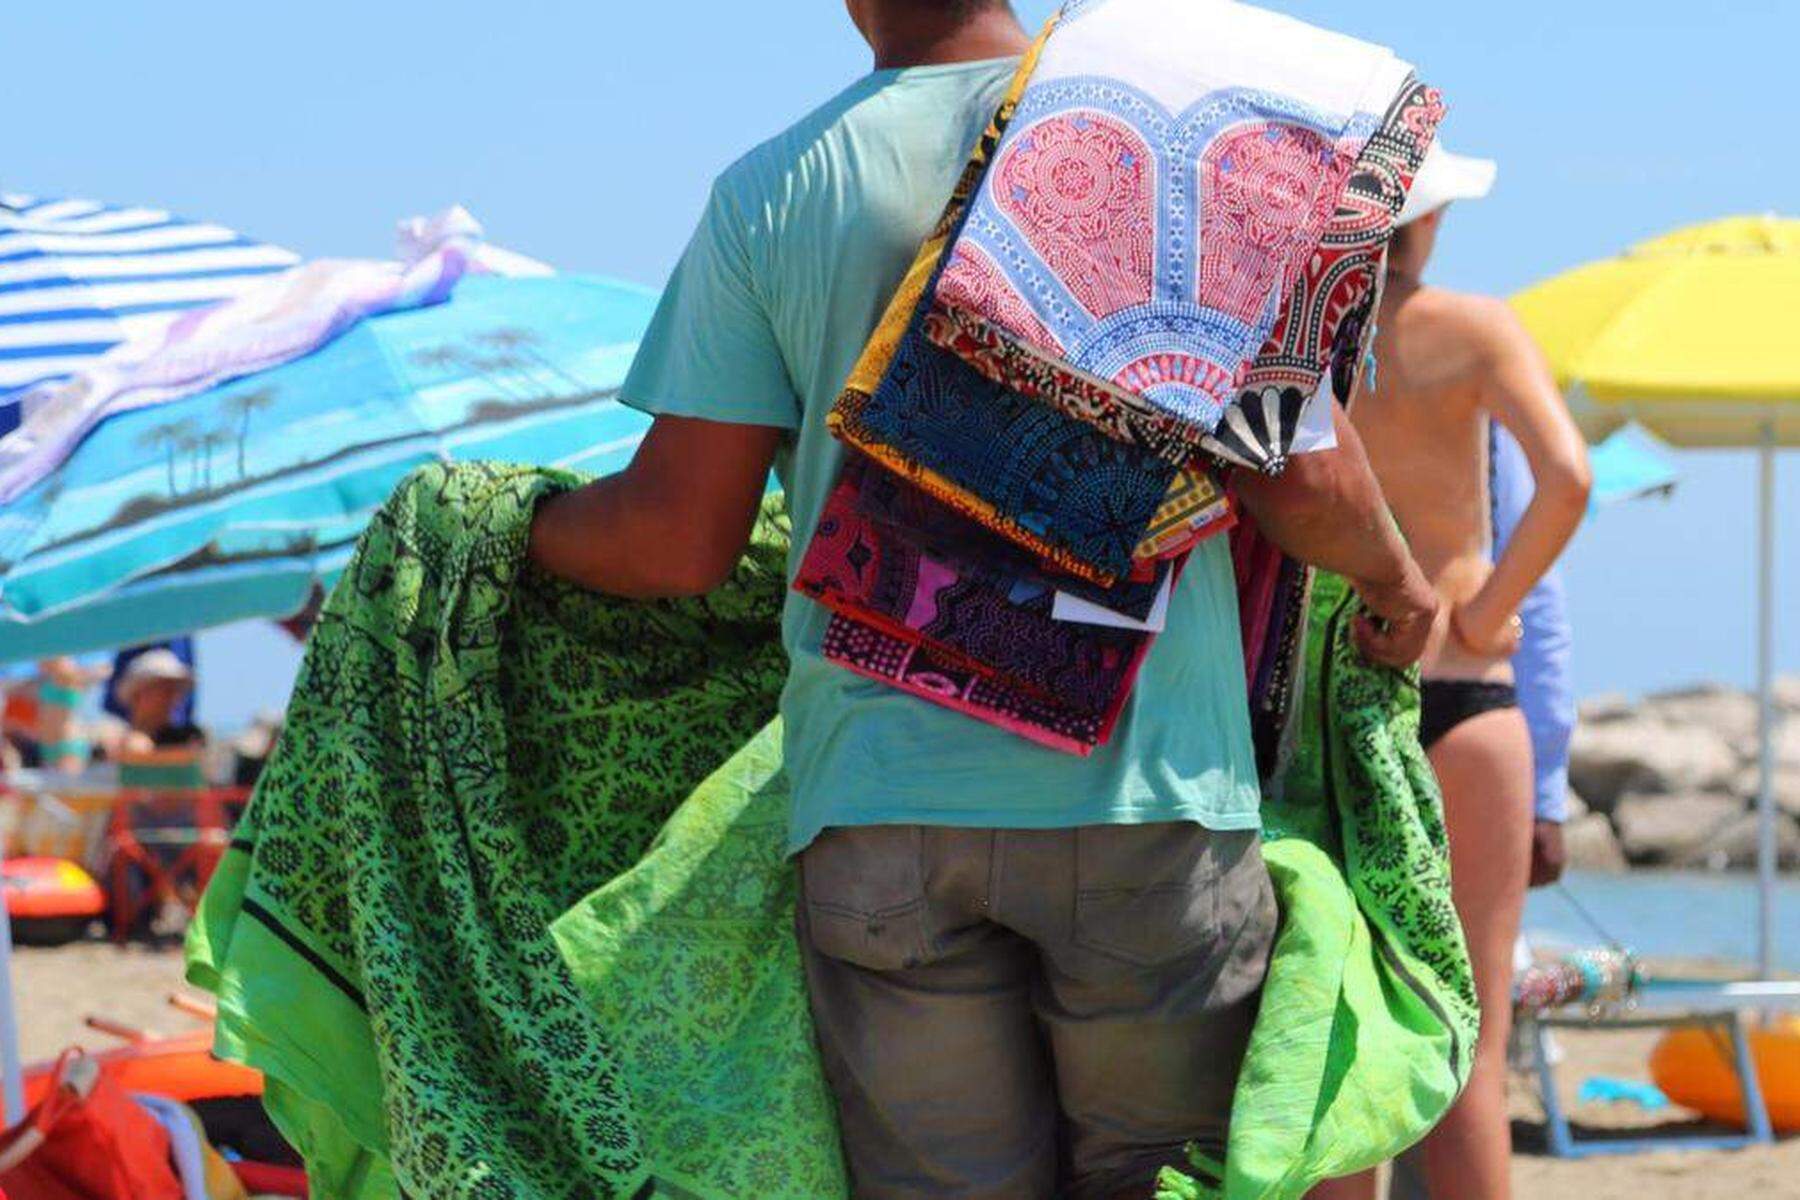 Alpe-Adria-Newsletter: Vorsicht bei Schnäppchen am Strand: Welche Souvenirs teuer kommen können